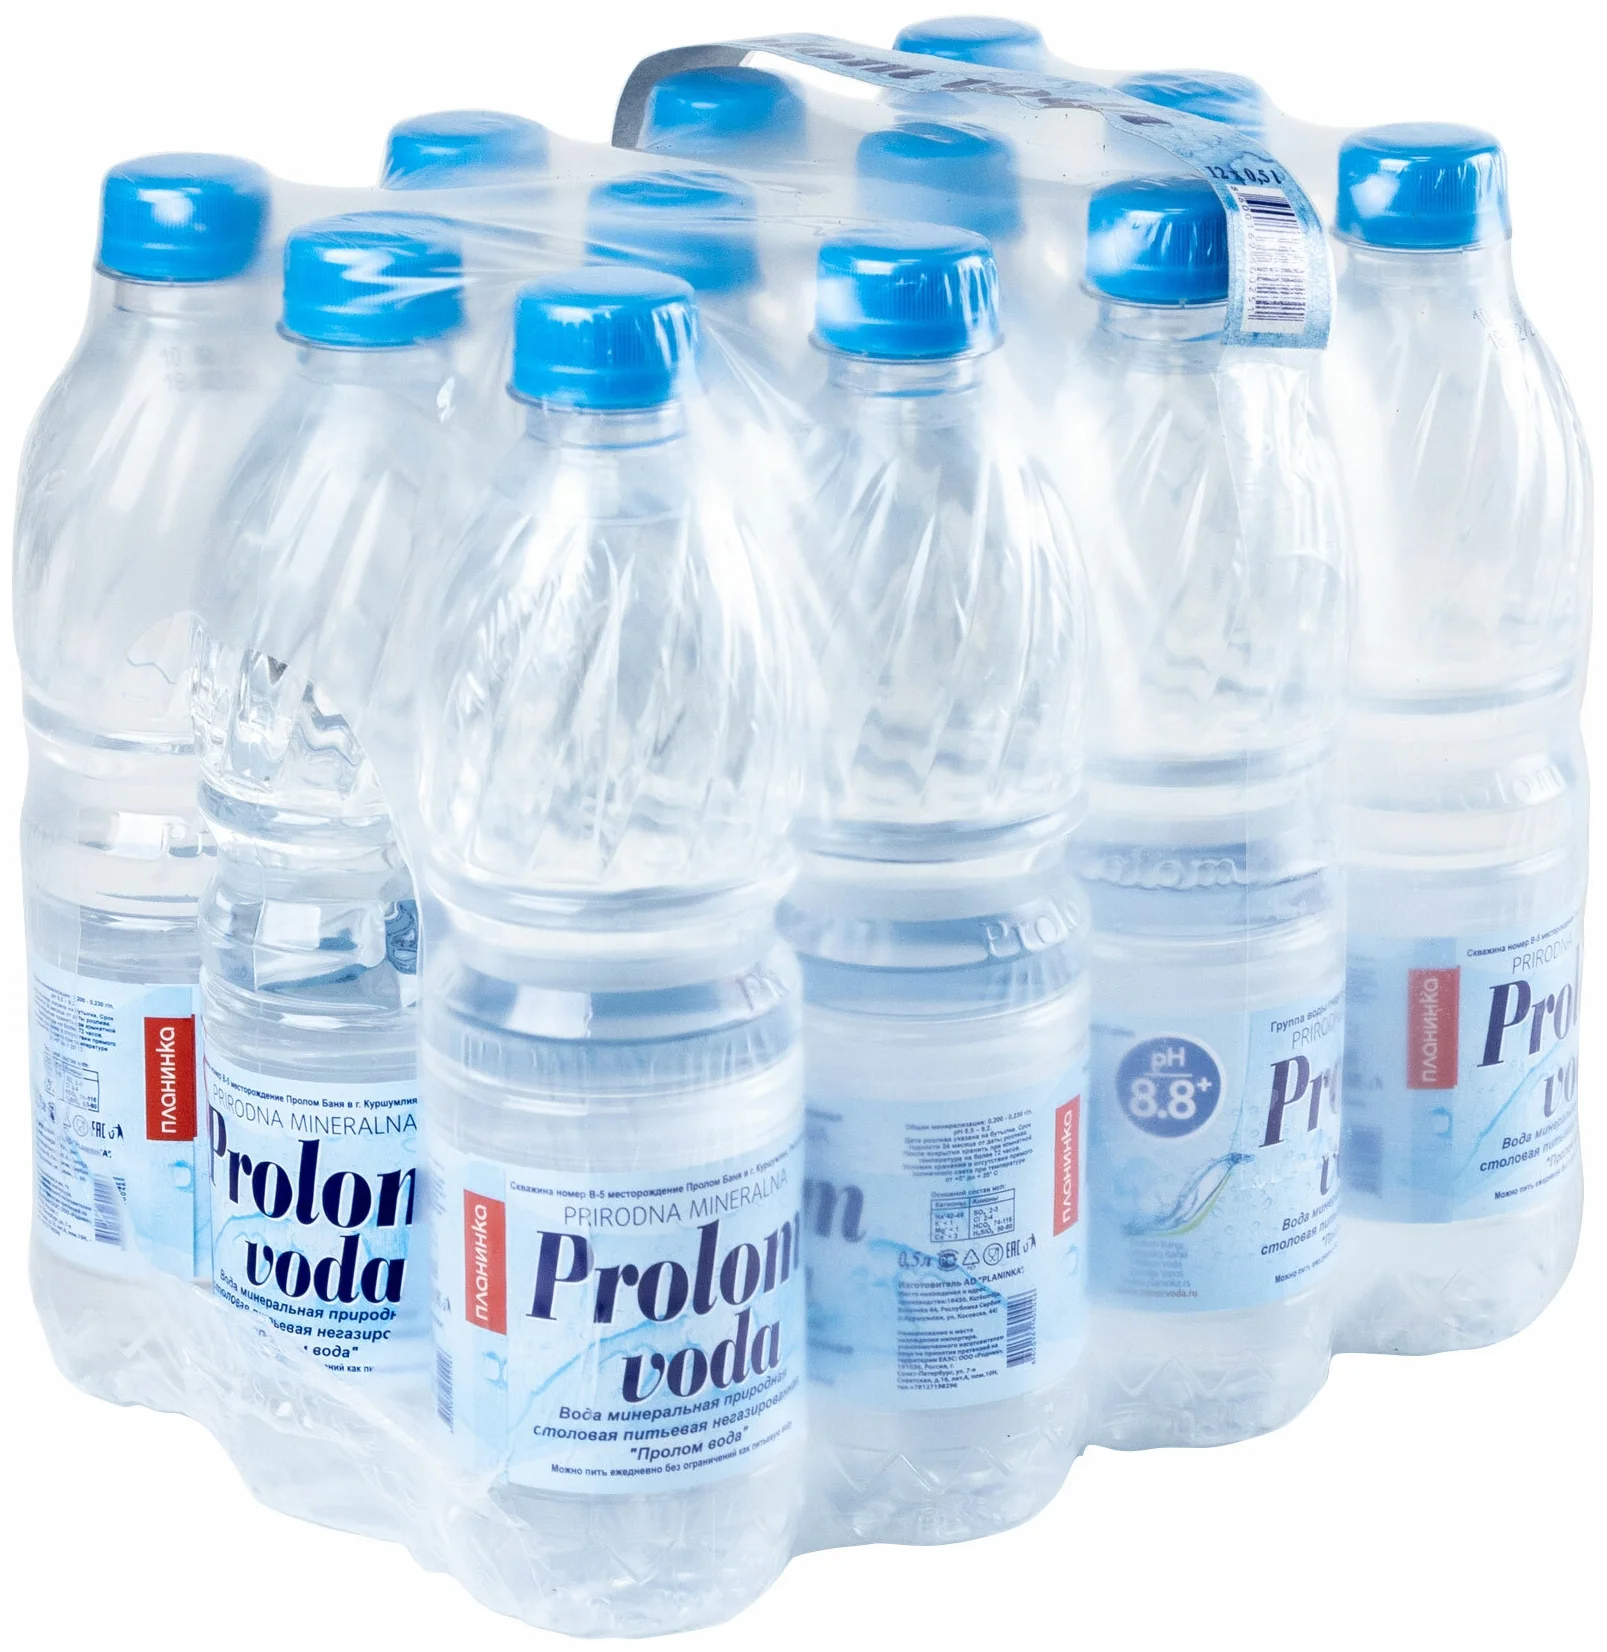 Prolom water 0,5L Box